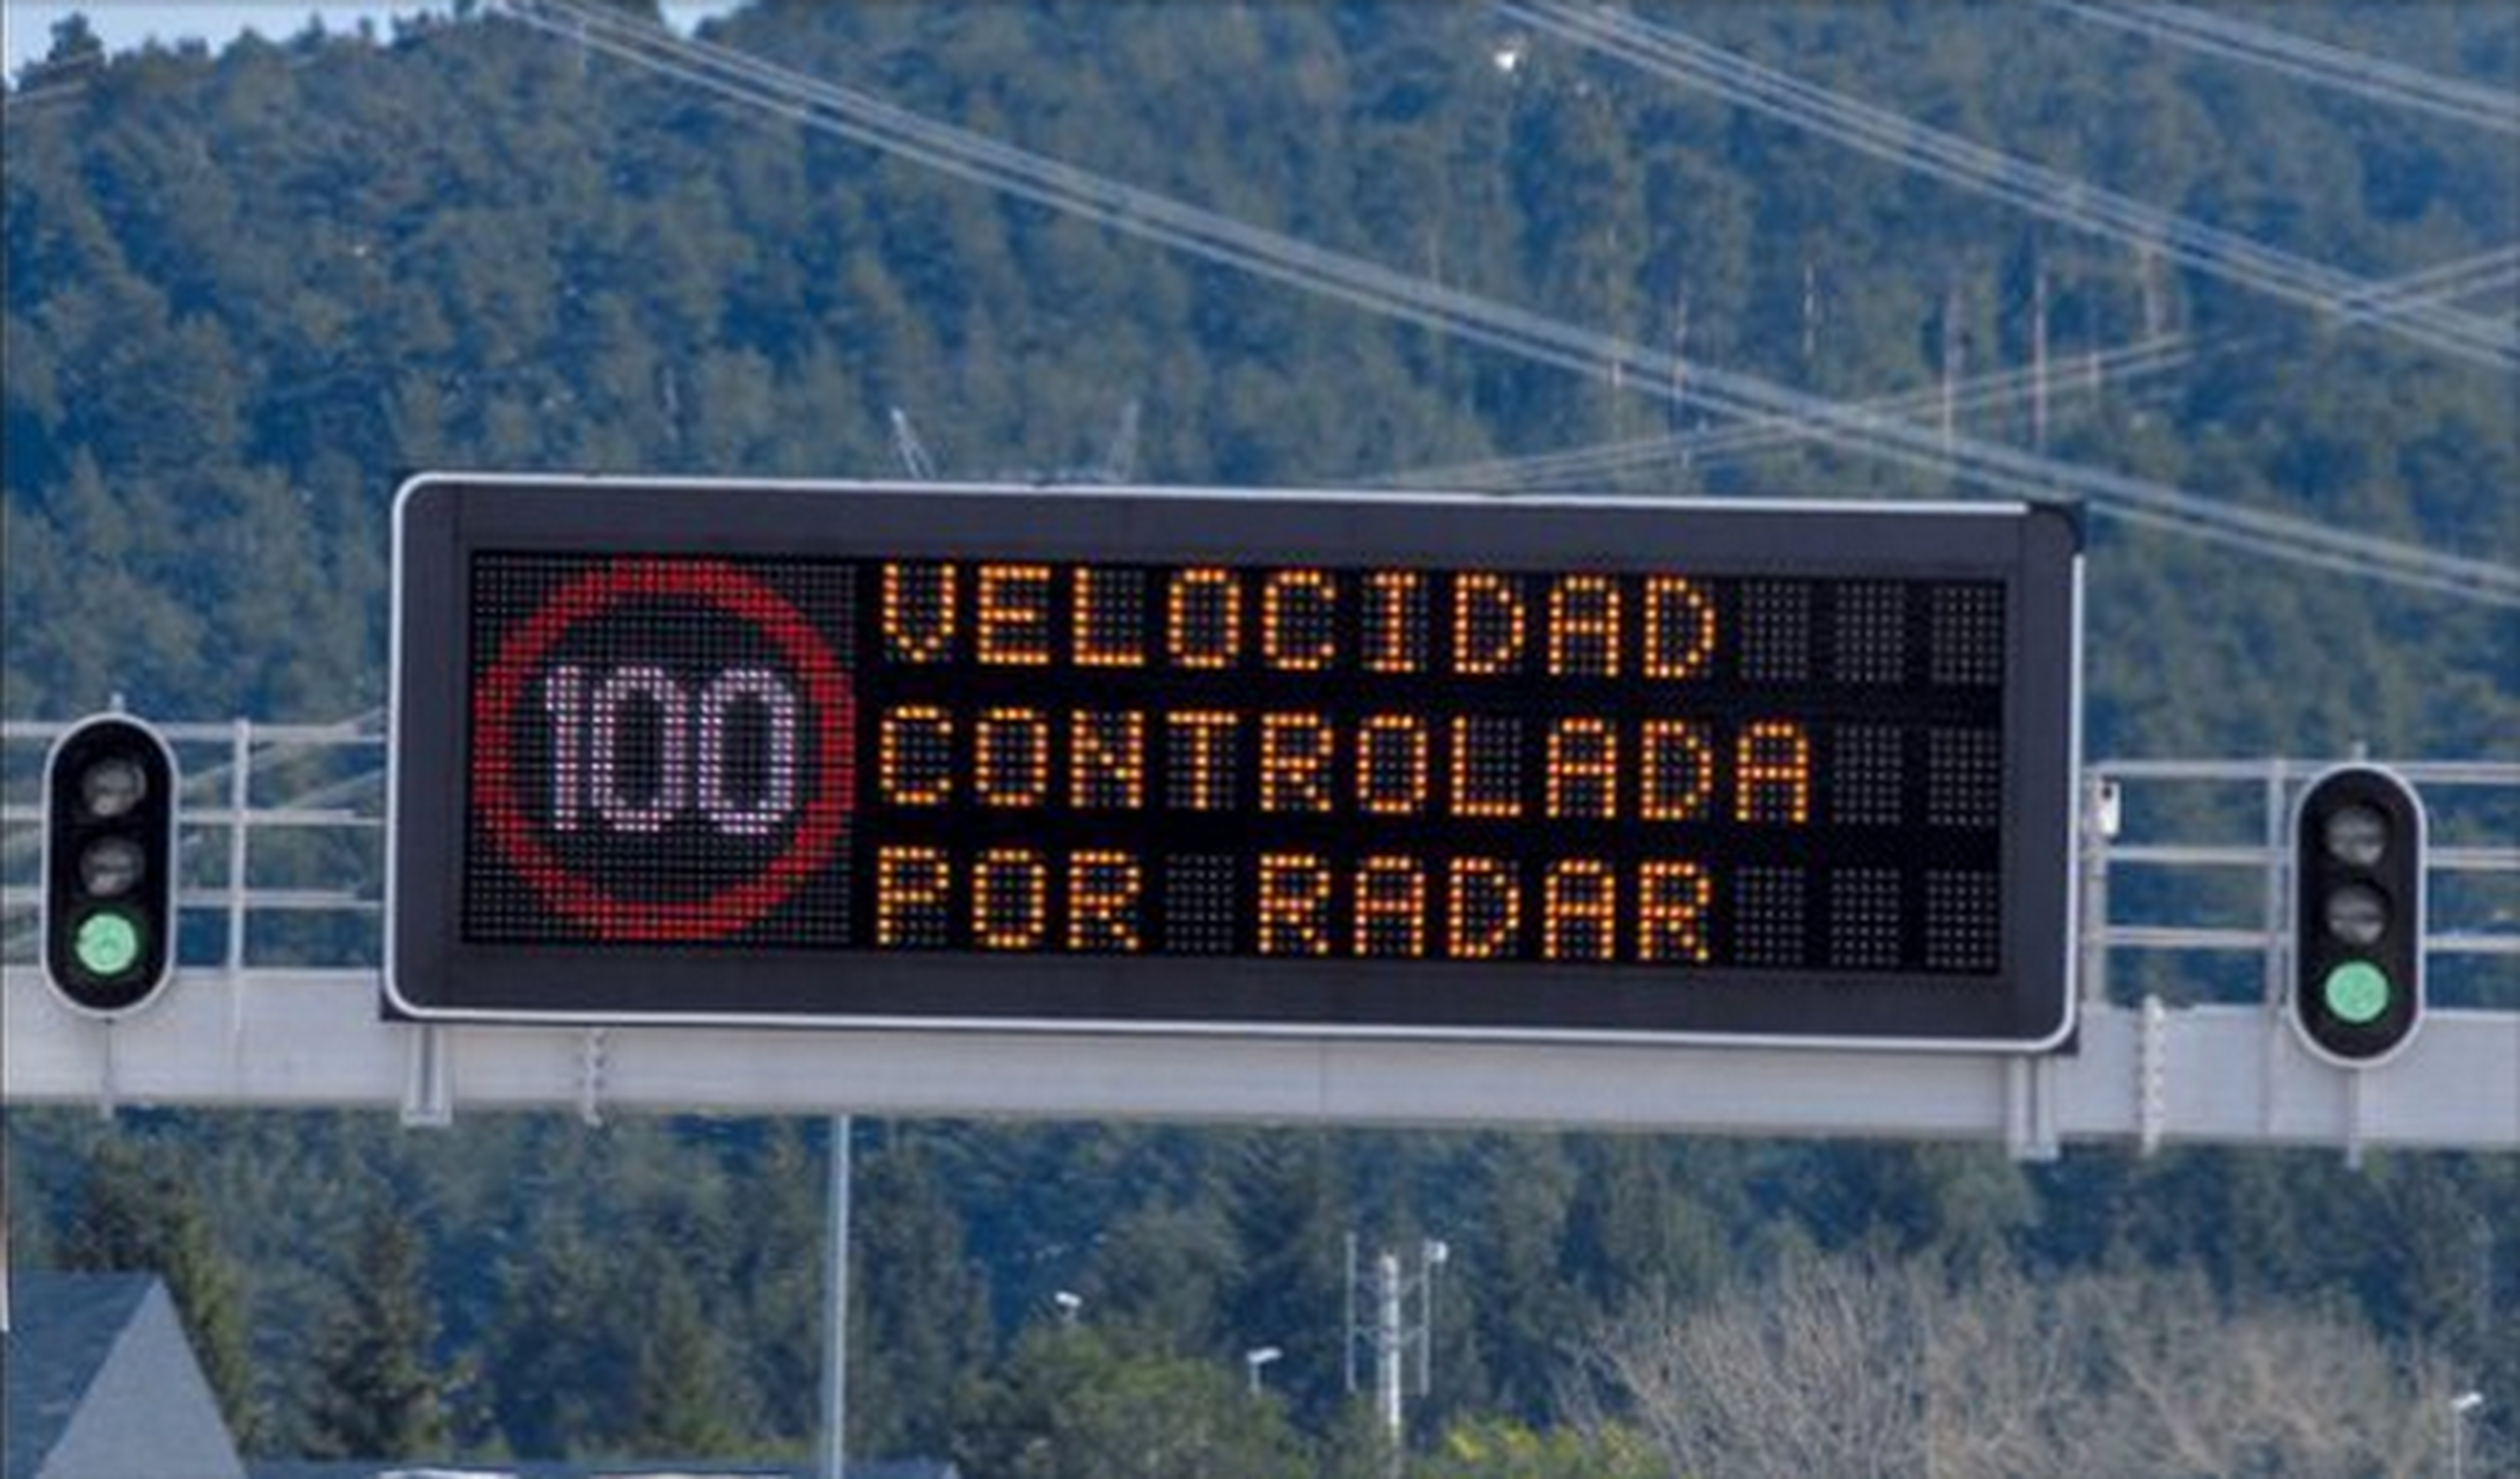 Ver los radares mejorará la seguridad, según conductores